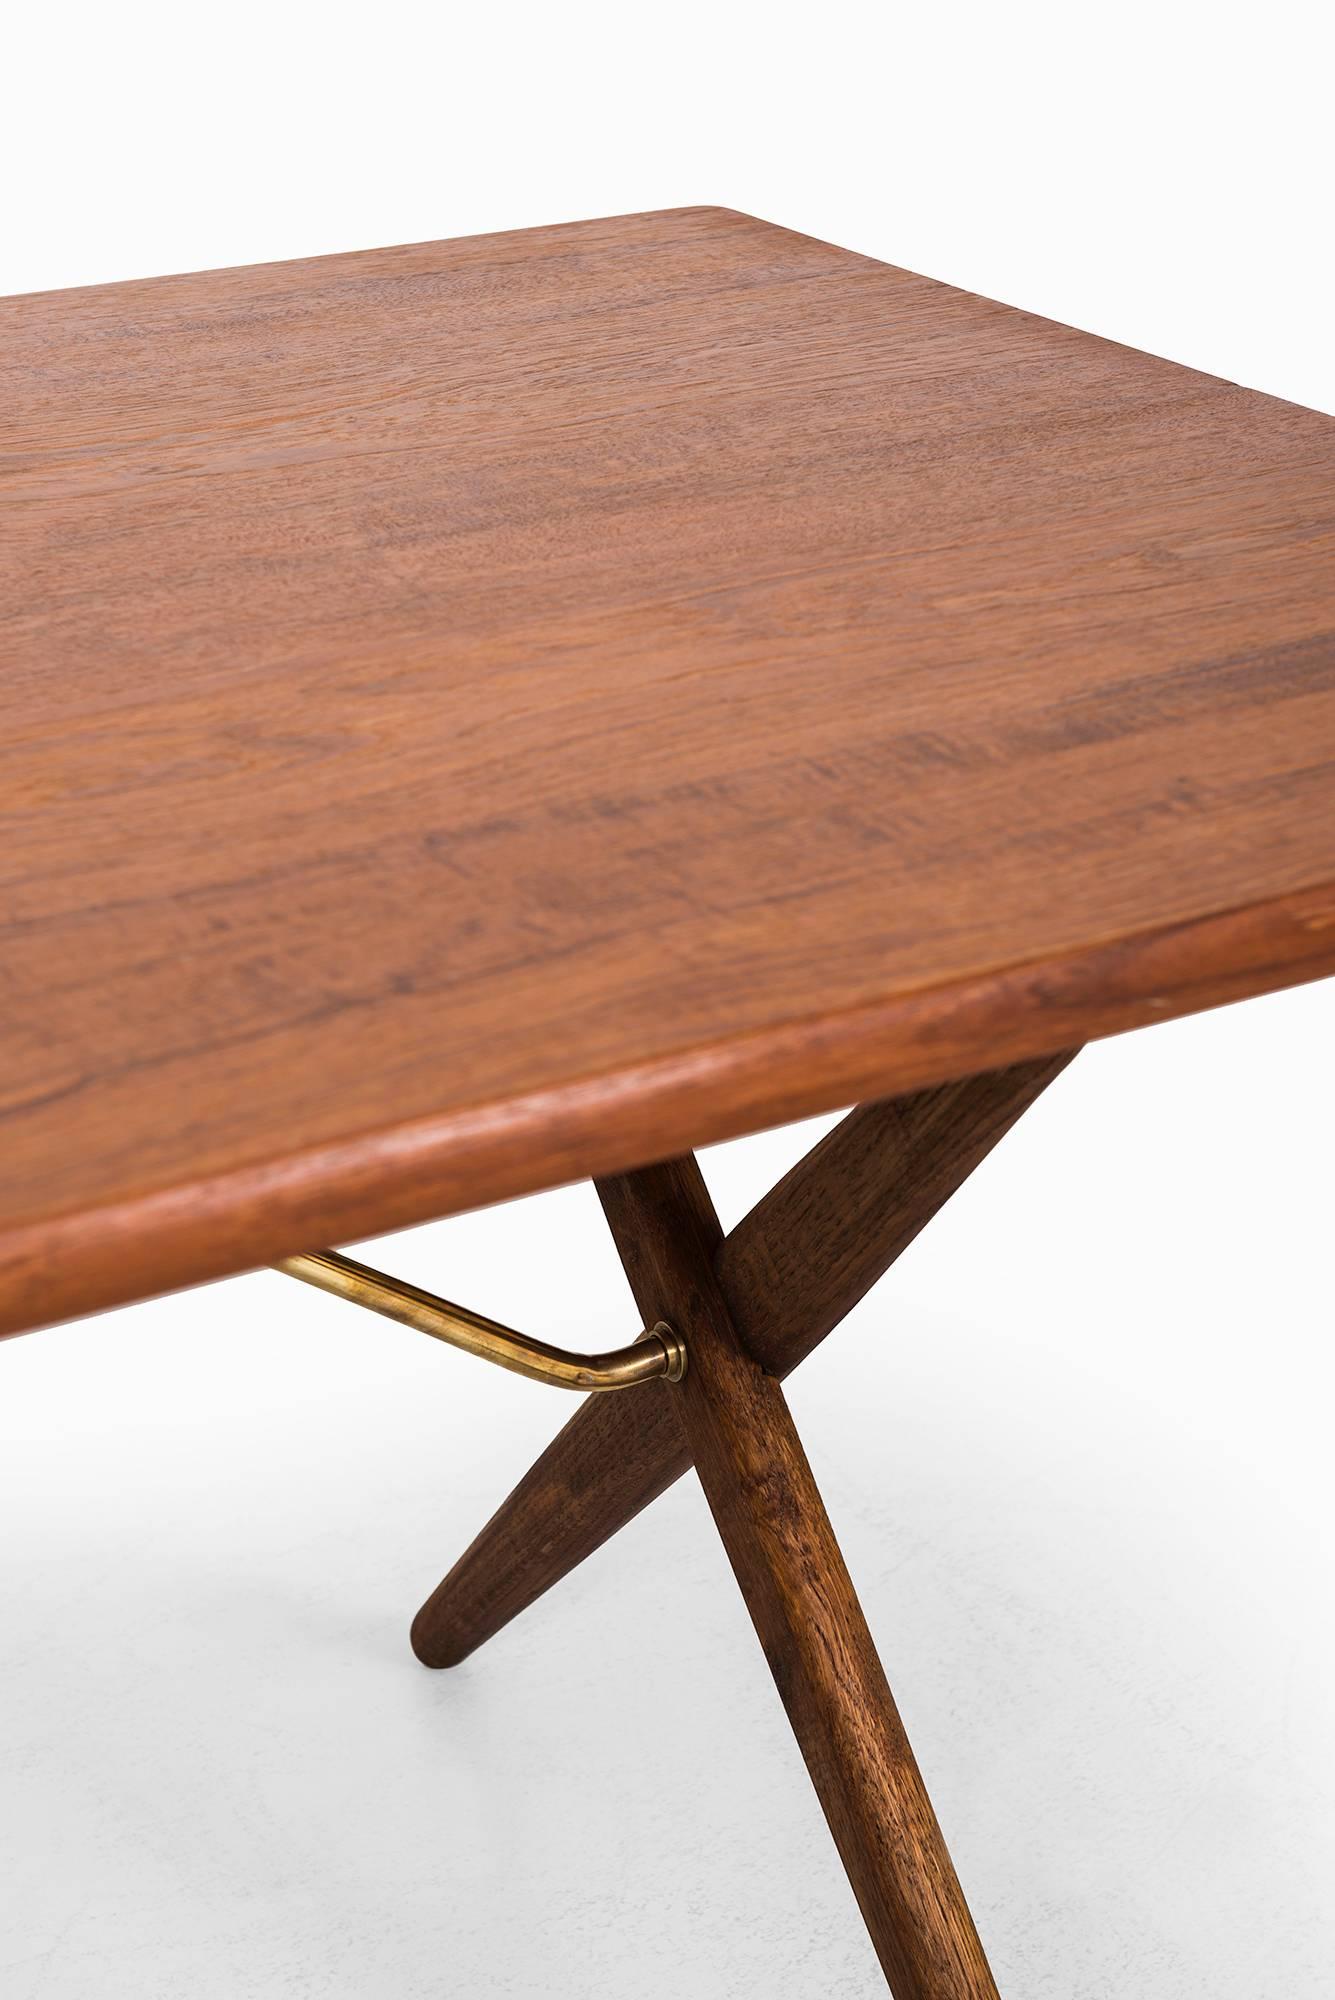 Hans Wegner Dining Table/Desk Model At-303 by Andreas Tuck in Denmark 1